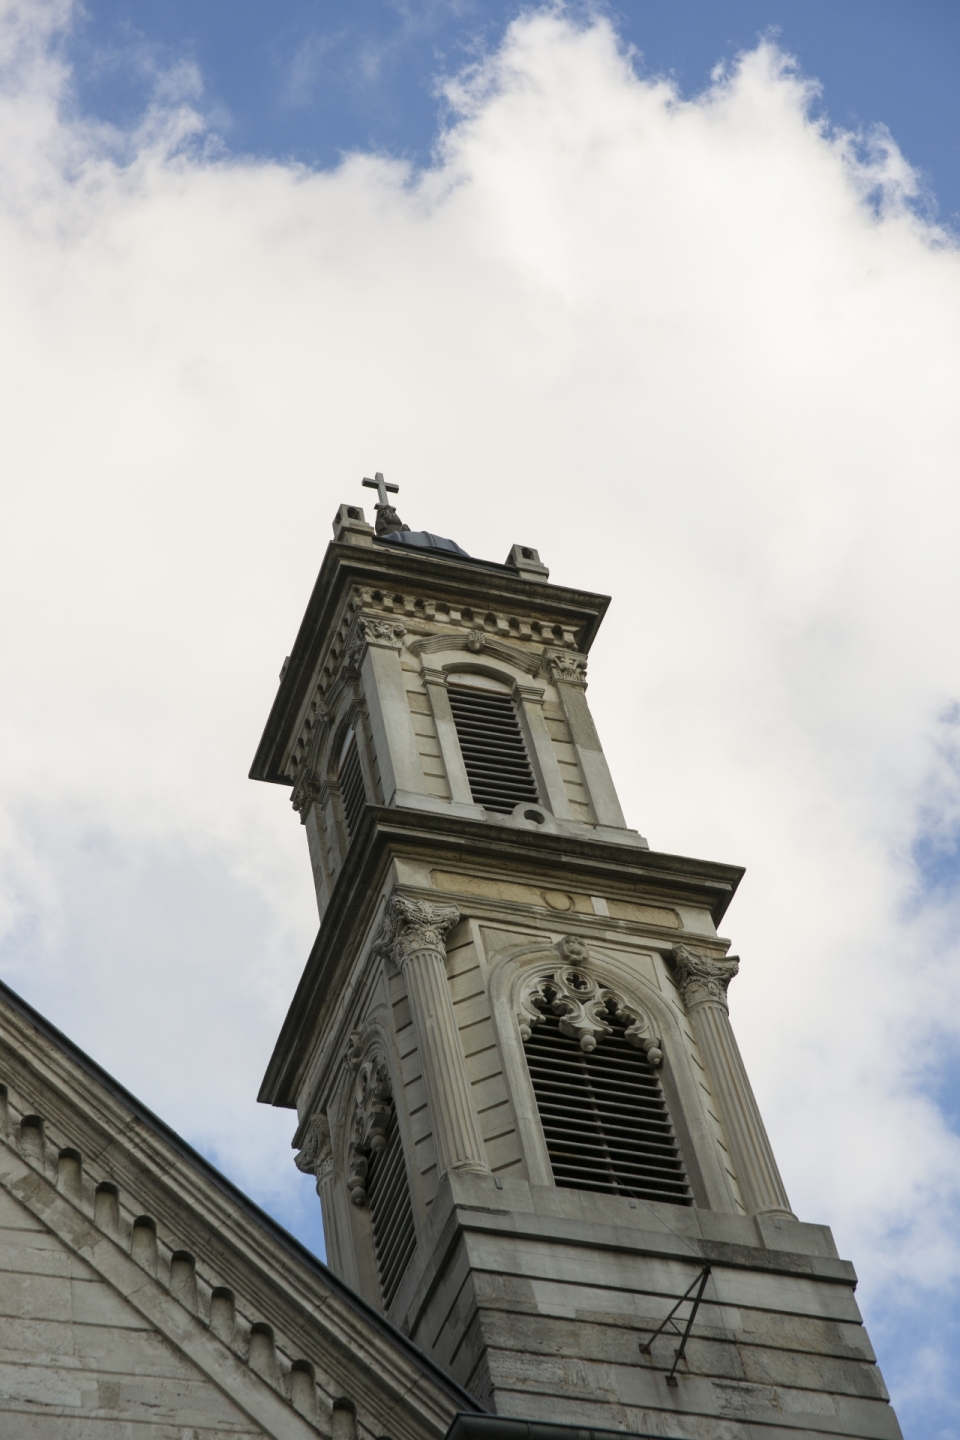 矗立于蓝天白云的教堂钟塔建筑